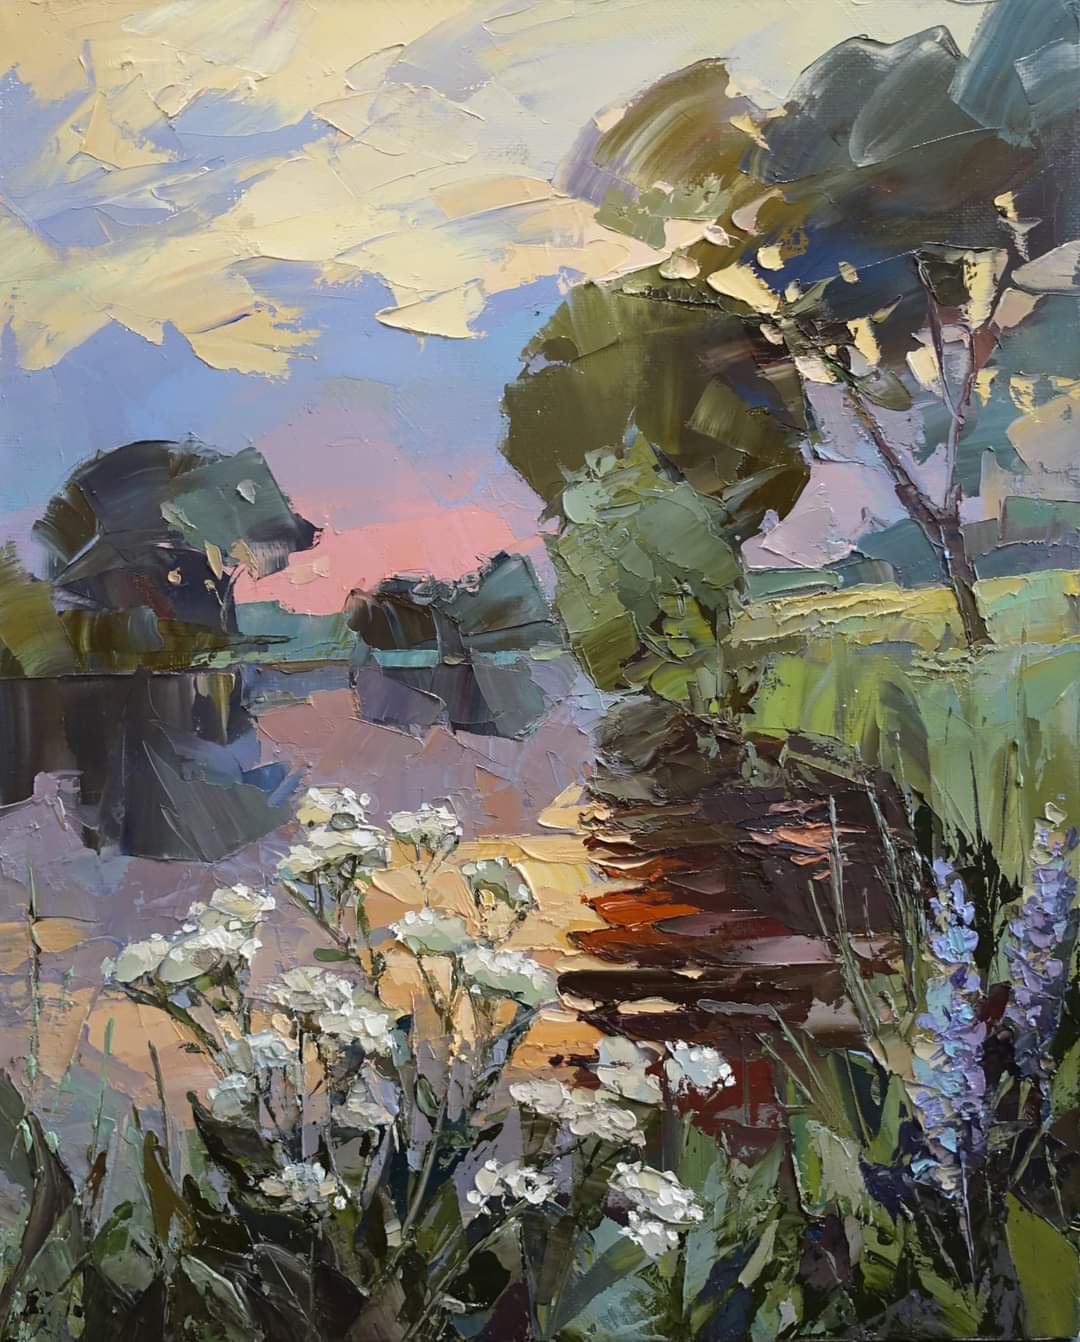 White night on the river - 1, Dmitry Kotunov, Buy the painting Oil